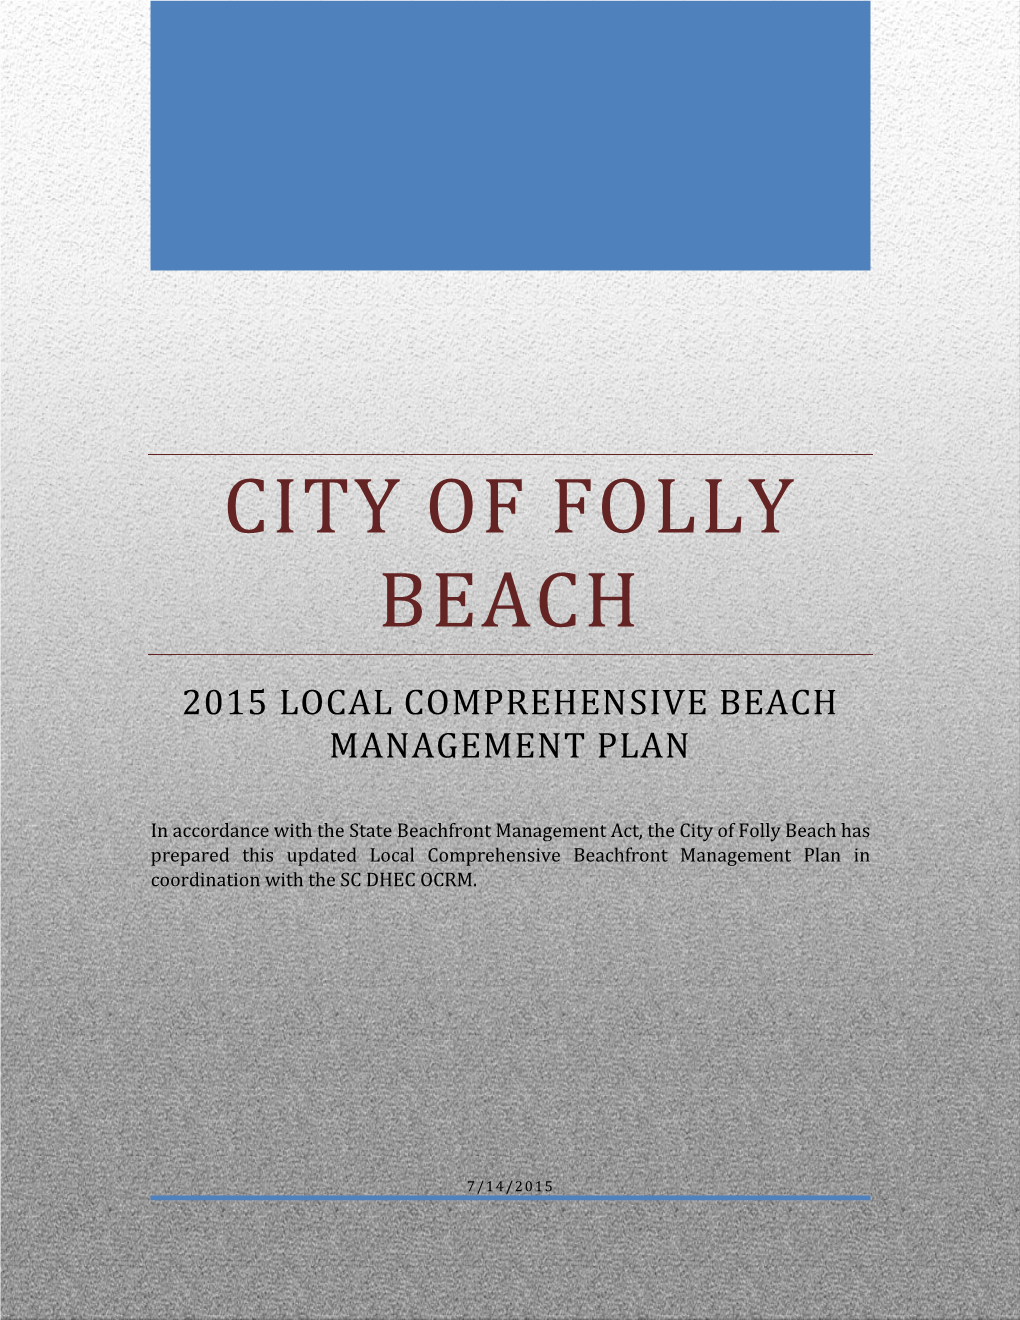 Beach Management Plan